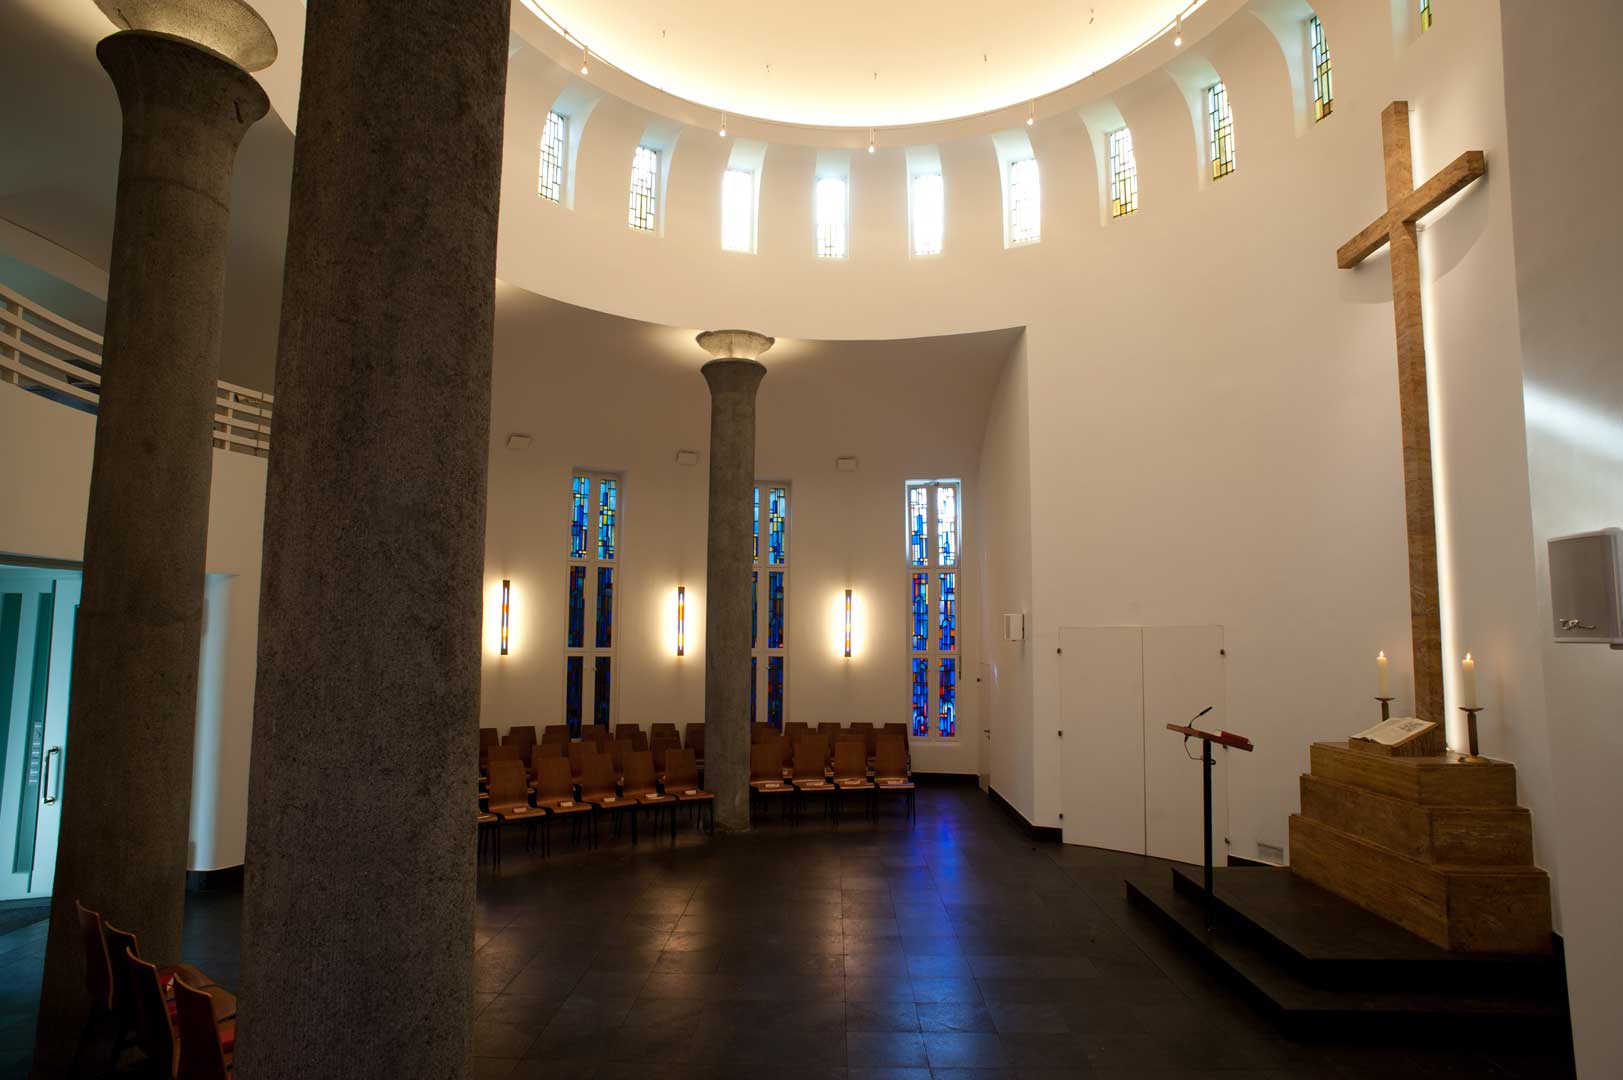 Galeriebild / Kirchengemeinde Nienstedten, Lichtplanung und Entwicklung von Sonderleuchten für die Kapelle